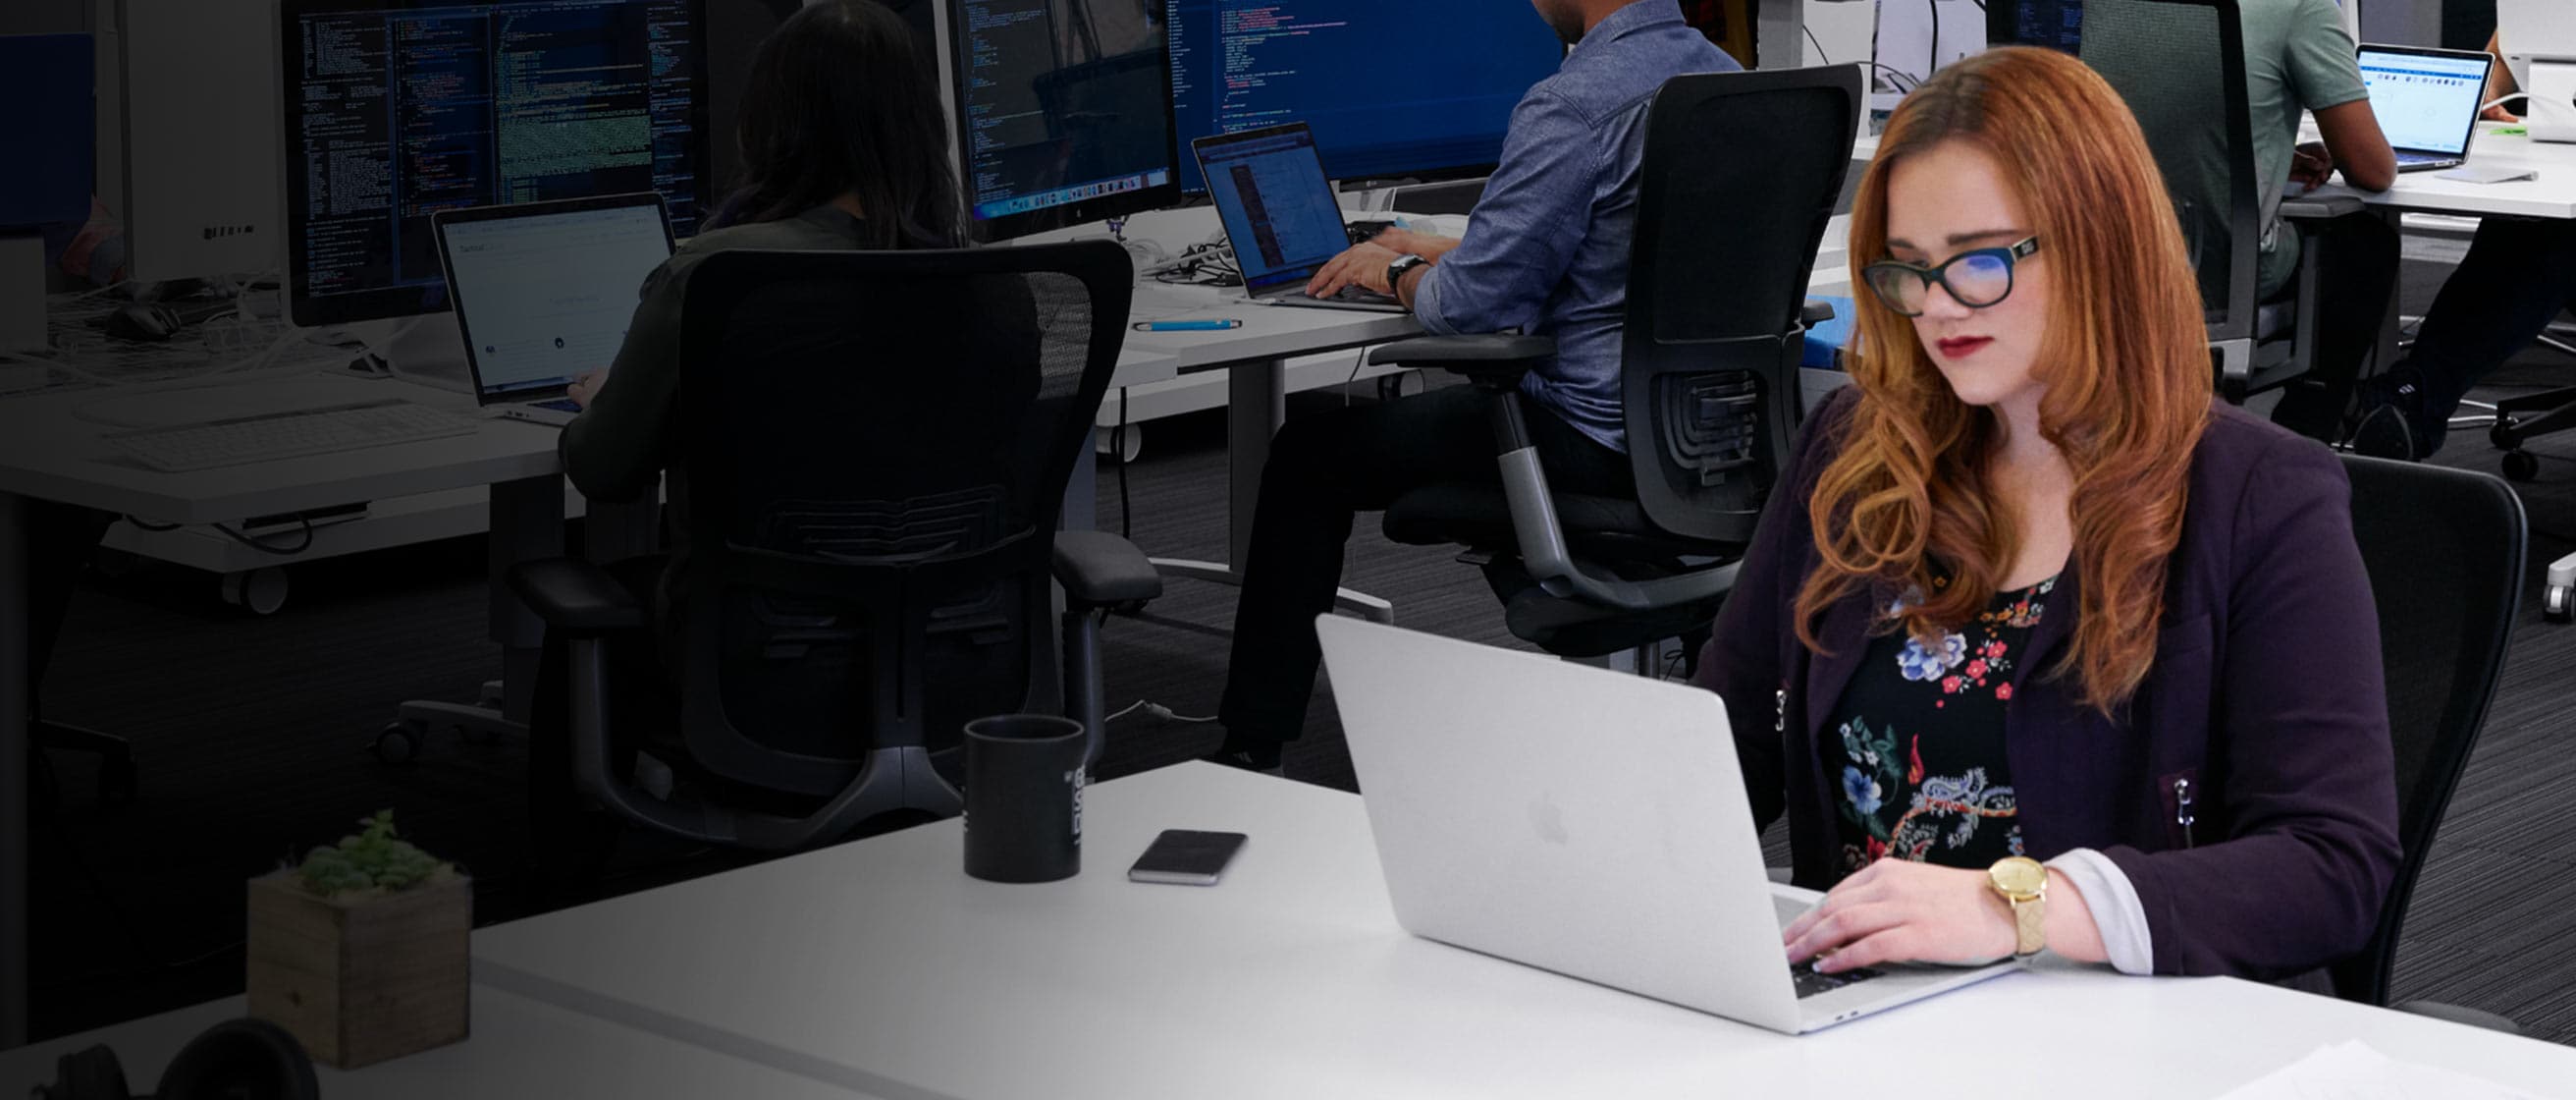 Persona trabajando en una computadora portátil en la oficina